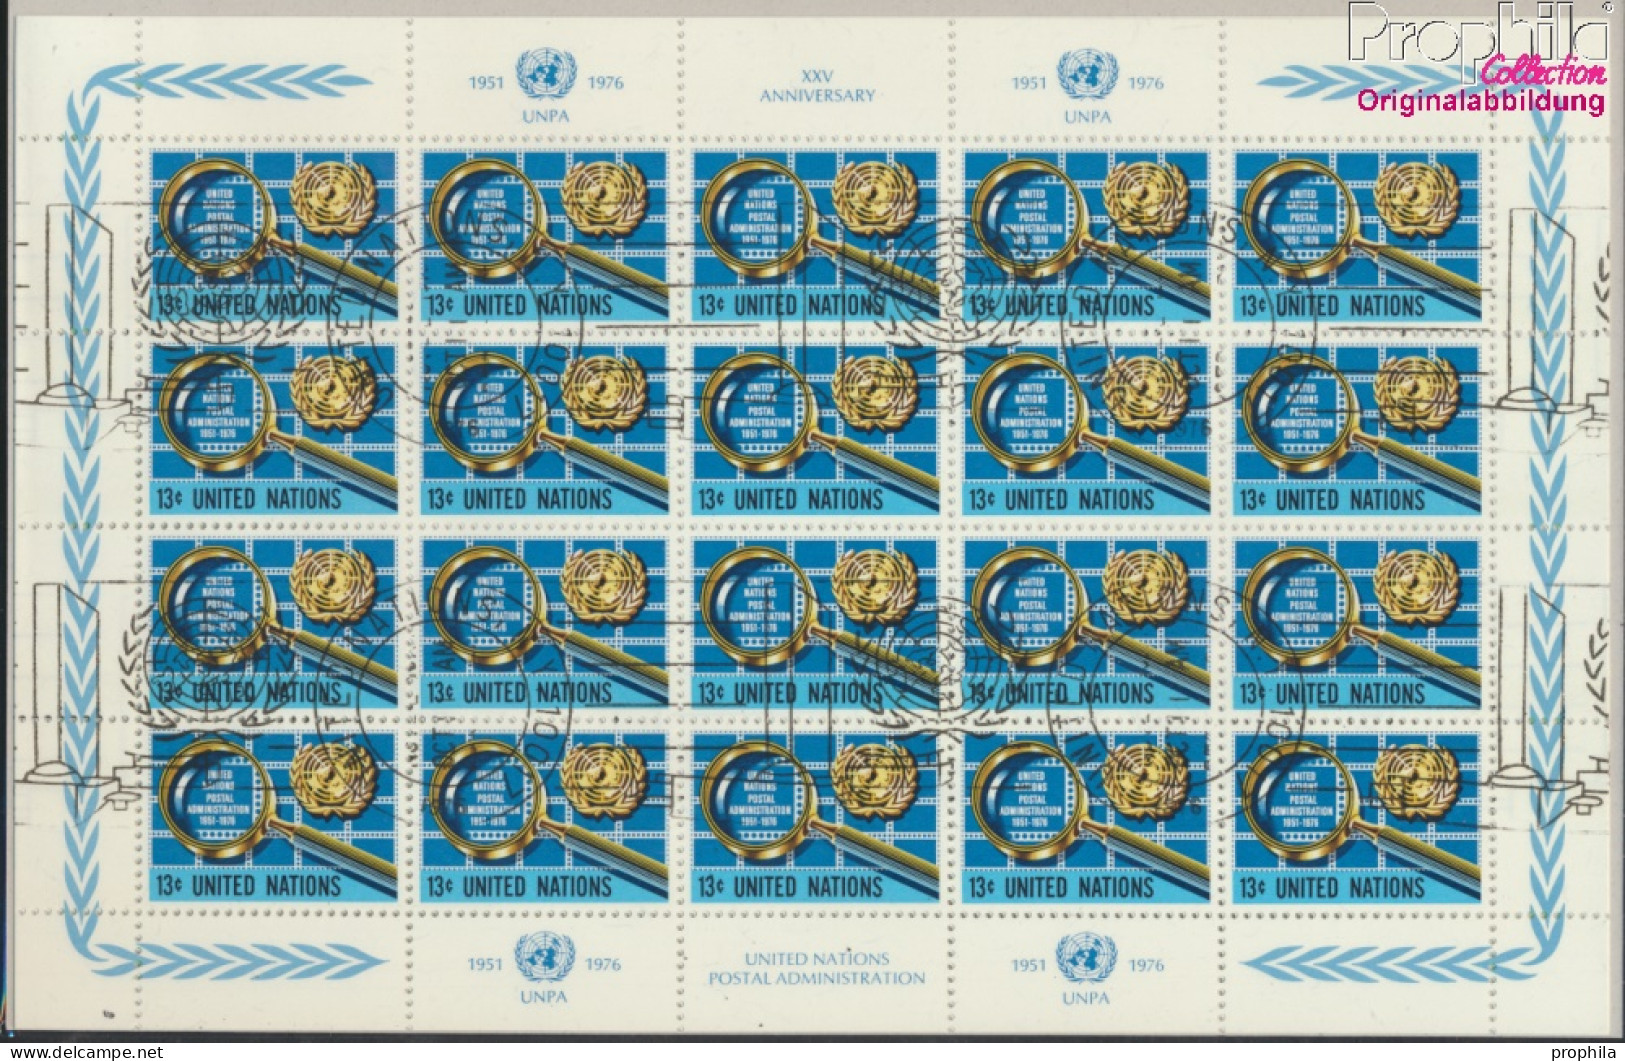 UNO - New York 299Klb-300Klb Kleinbogen (kompl.Ausg.) Gestempelt 1976 Postverwaltung (10050723 - Gebraucht